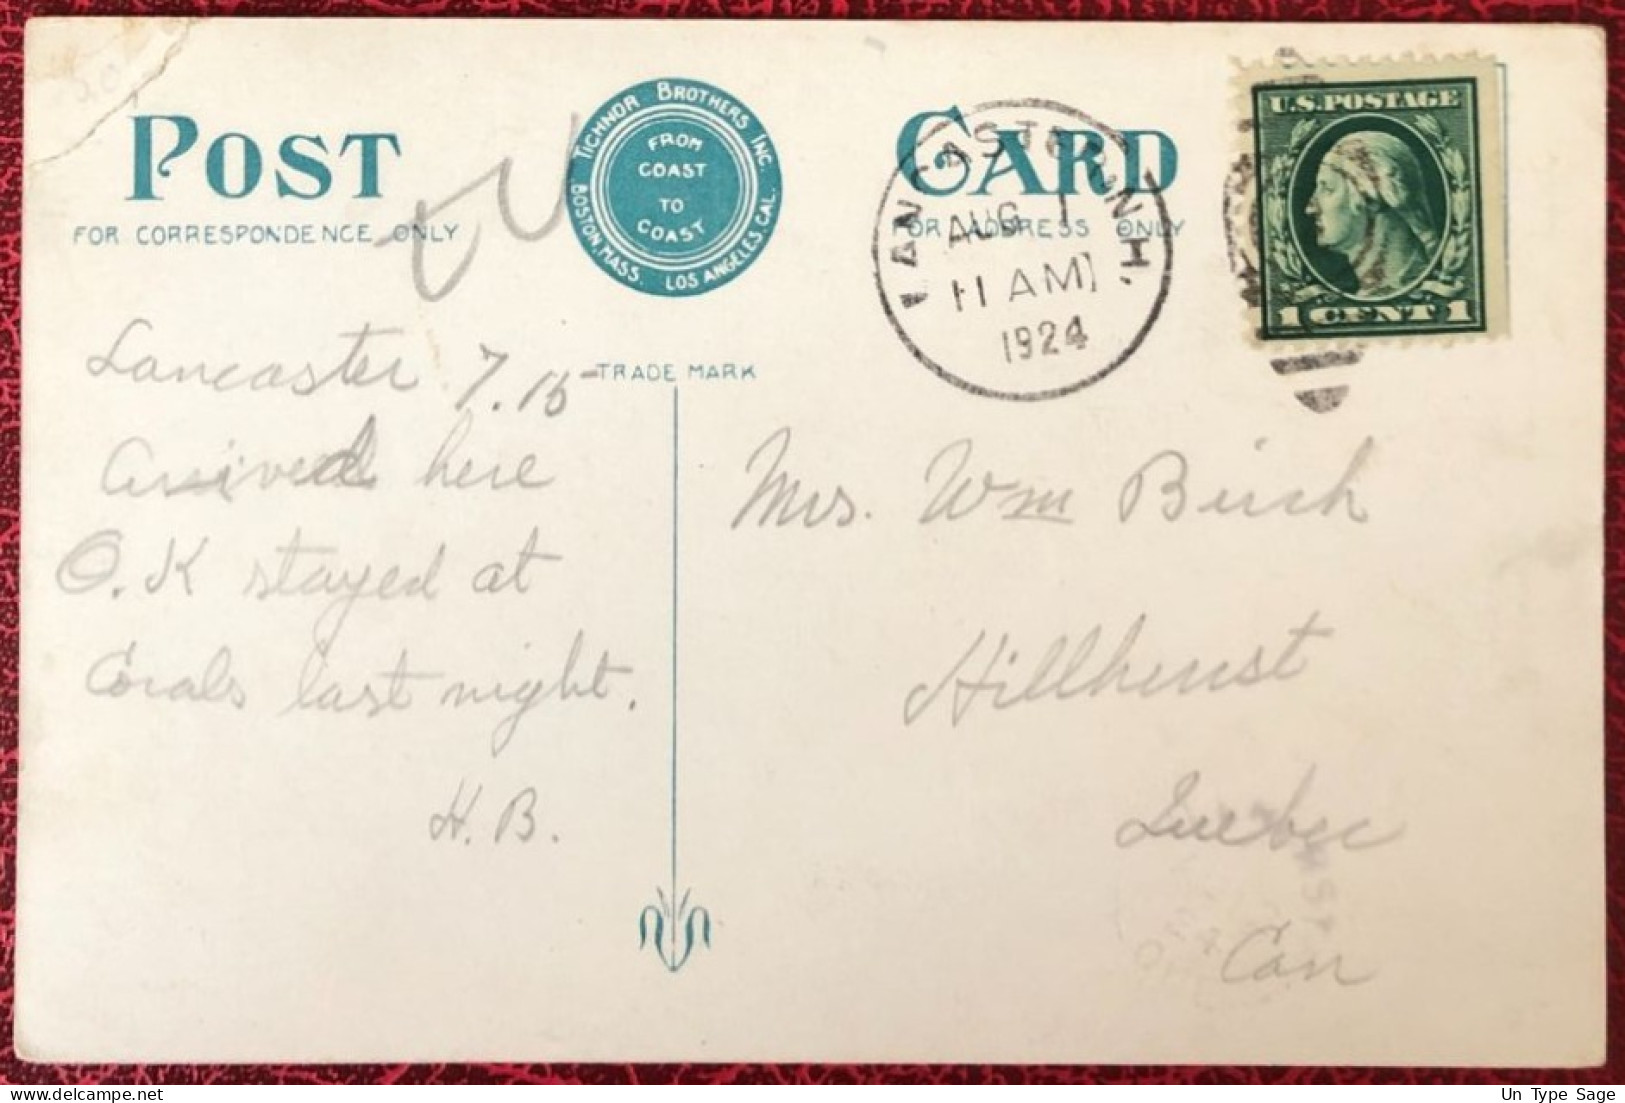 Etats-Unis, Divers Sur CPA, Cachet Lancaster 1.8.1924 Pour Quebec, Canada - (C1408) - Postal History